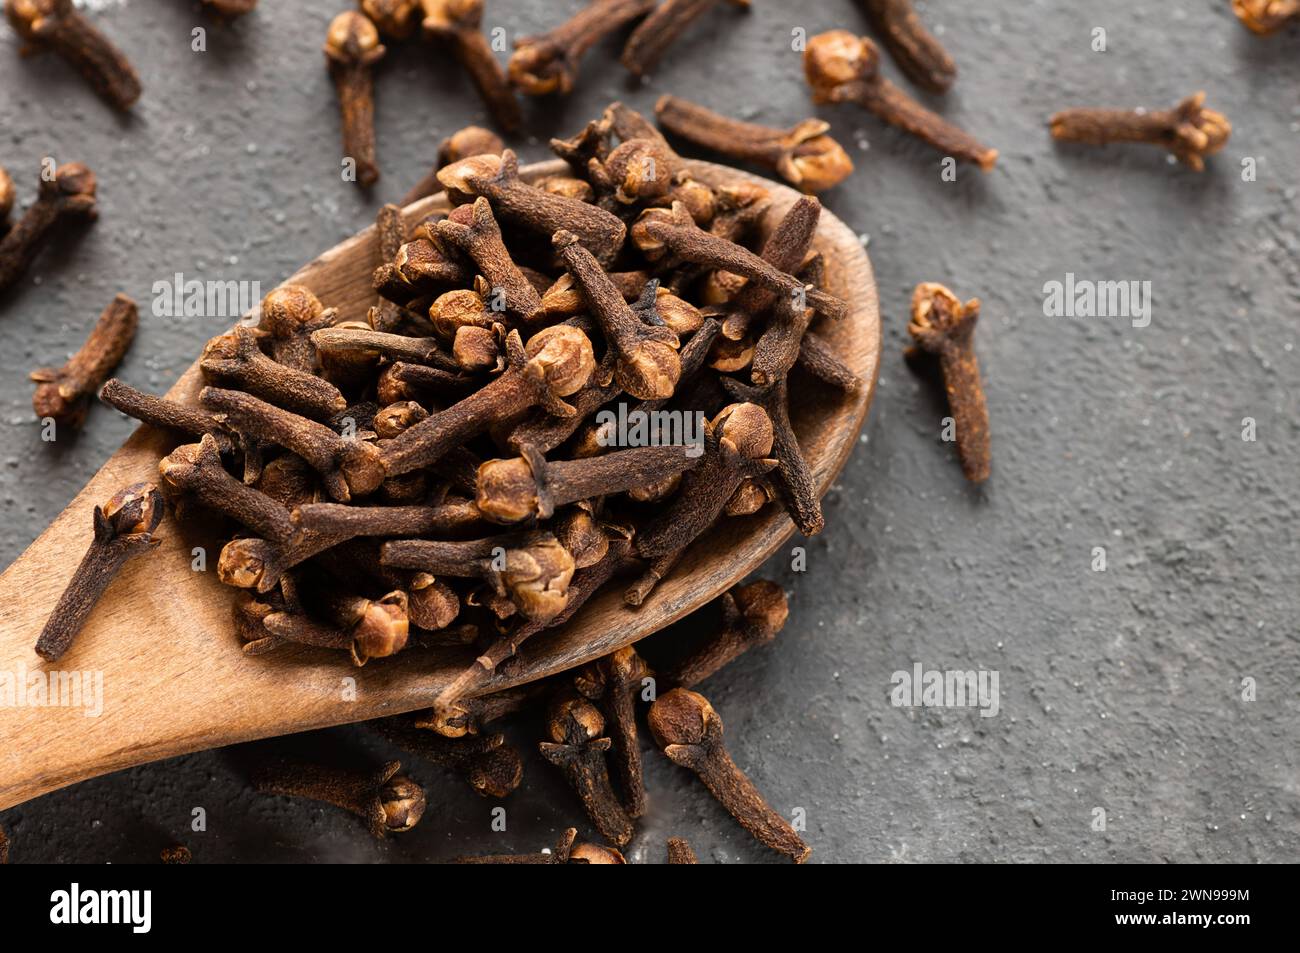 Chiodi di garofano secchi in pala di legno o cucchiaio su tavola rustica, concetto di spezie fresche alle erbe Foto Stock